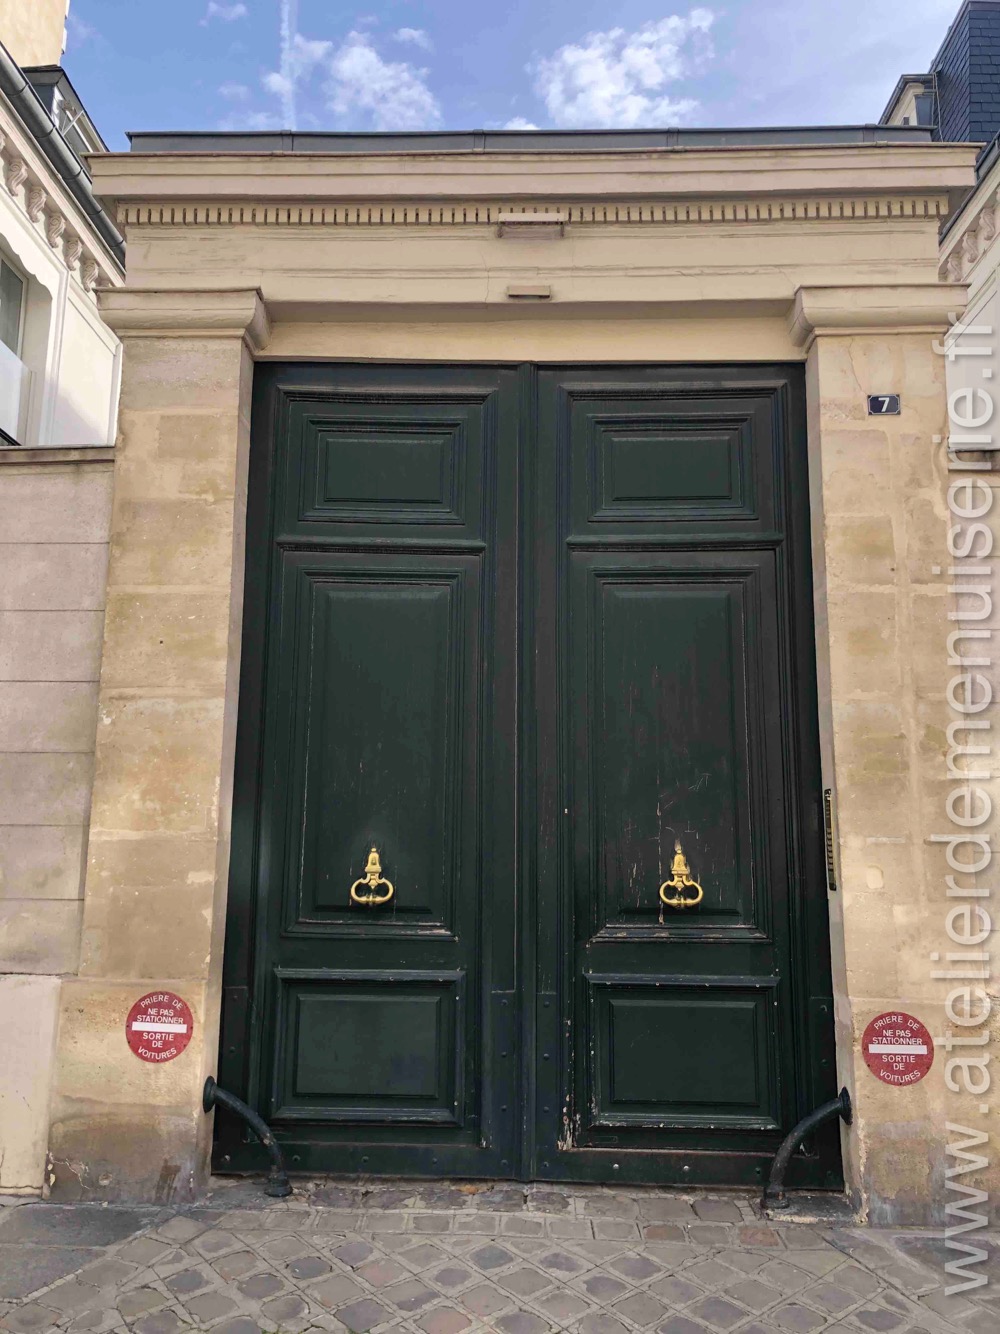 Porte Cochère Monumentale - 7 Rue Monsieur - Paris 7